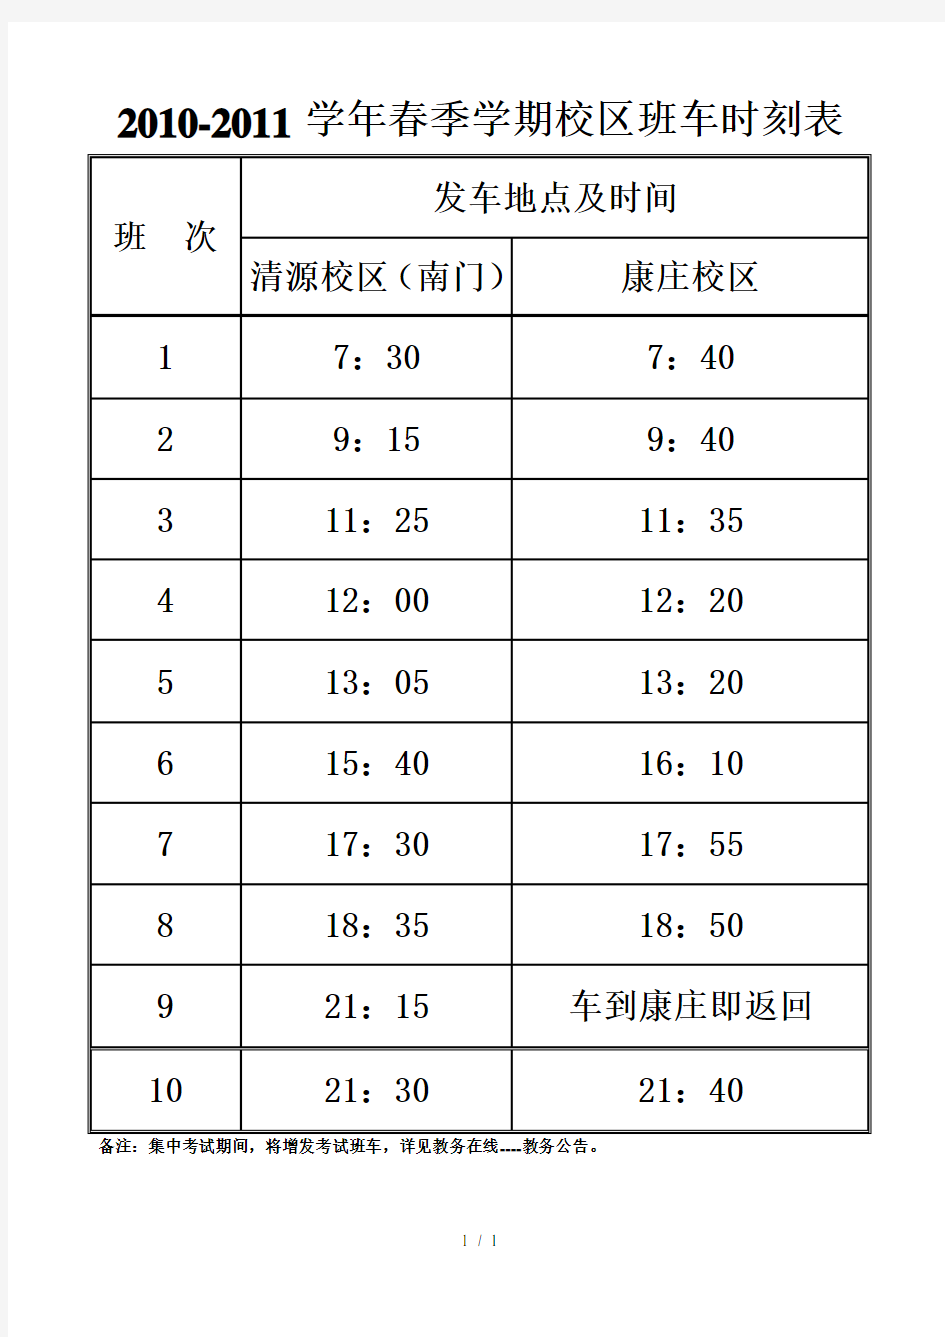 北京石油化工学院校区班车时刻表